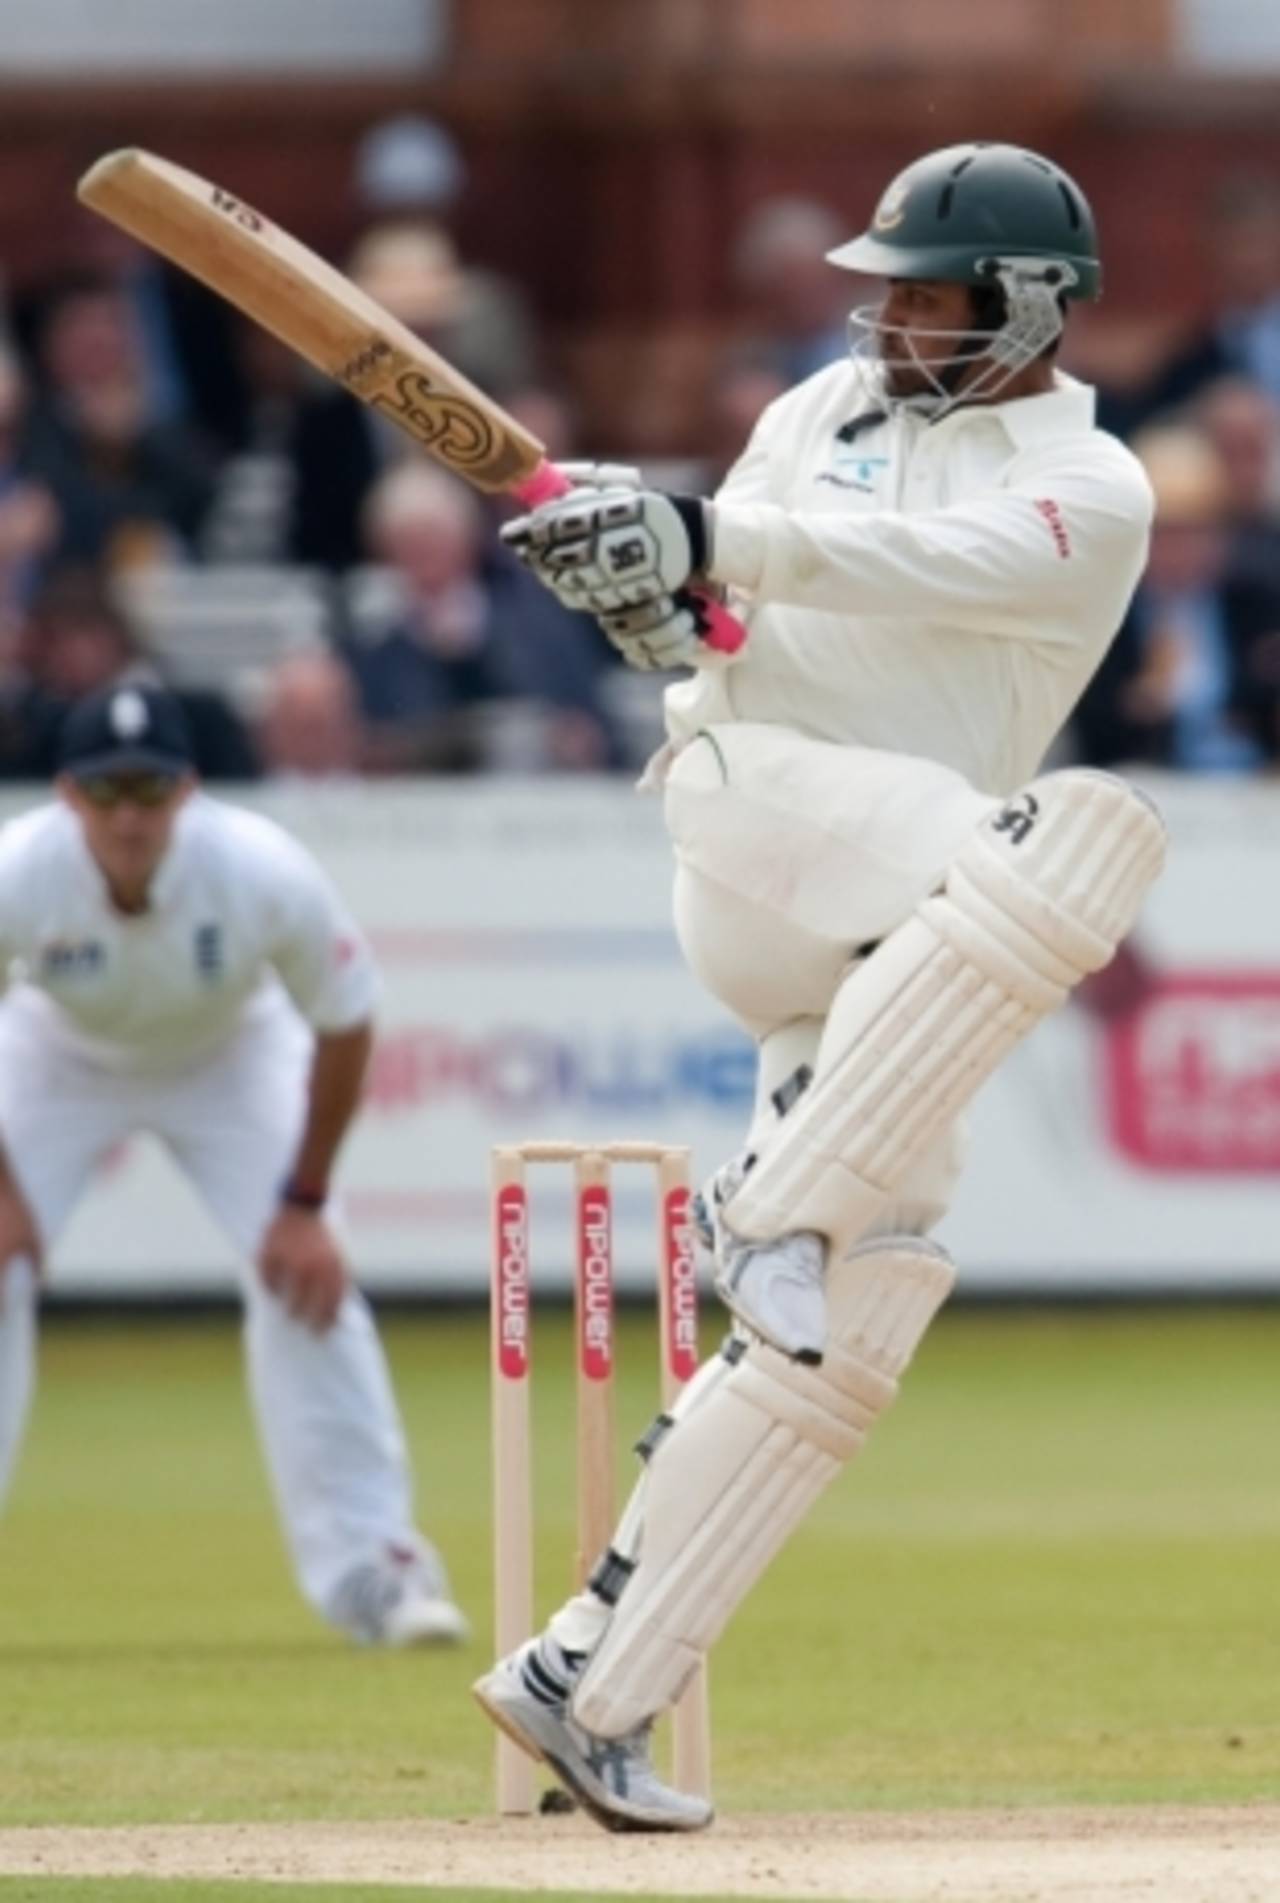 Tamim Iqbal overcame his wrist injury with a stylish 55, England v Bangladesh, 1st Test, Lord's, May 28, 2010